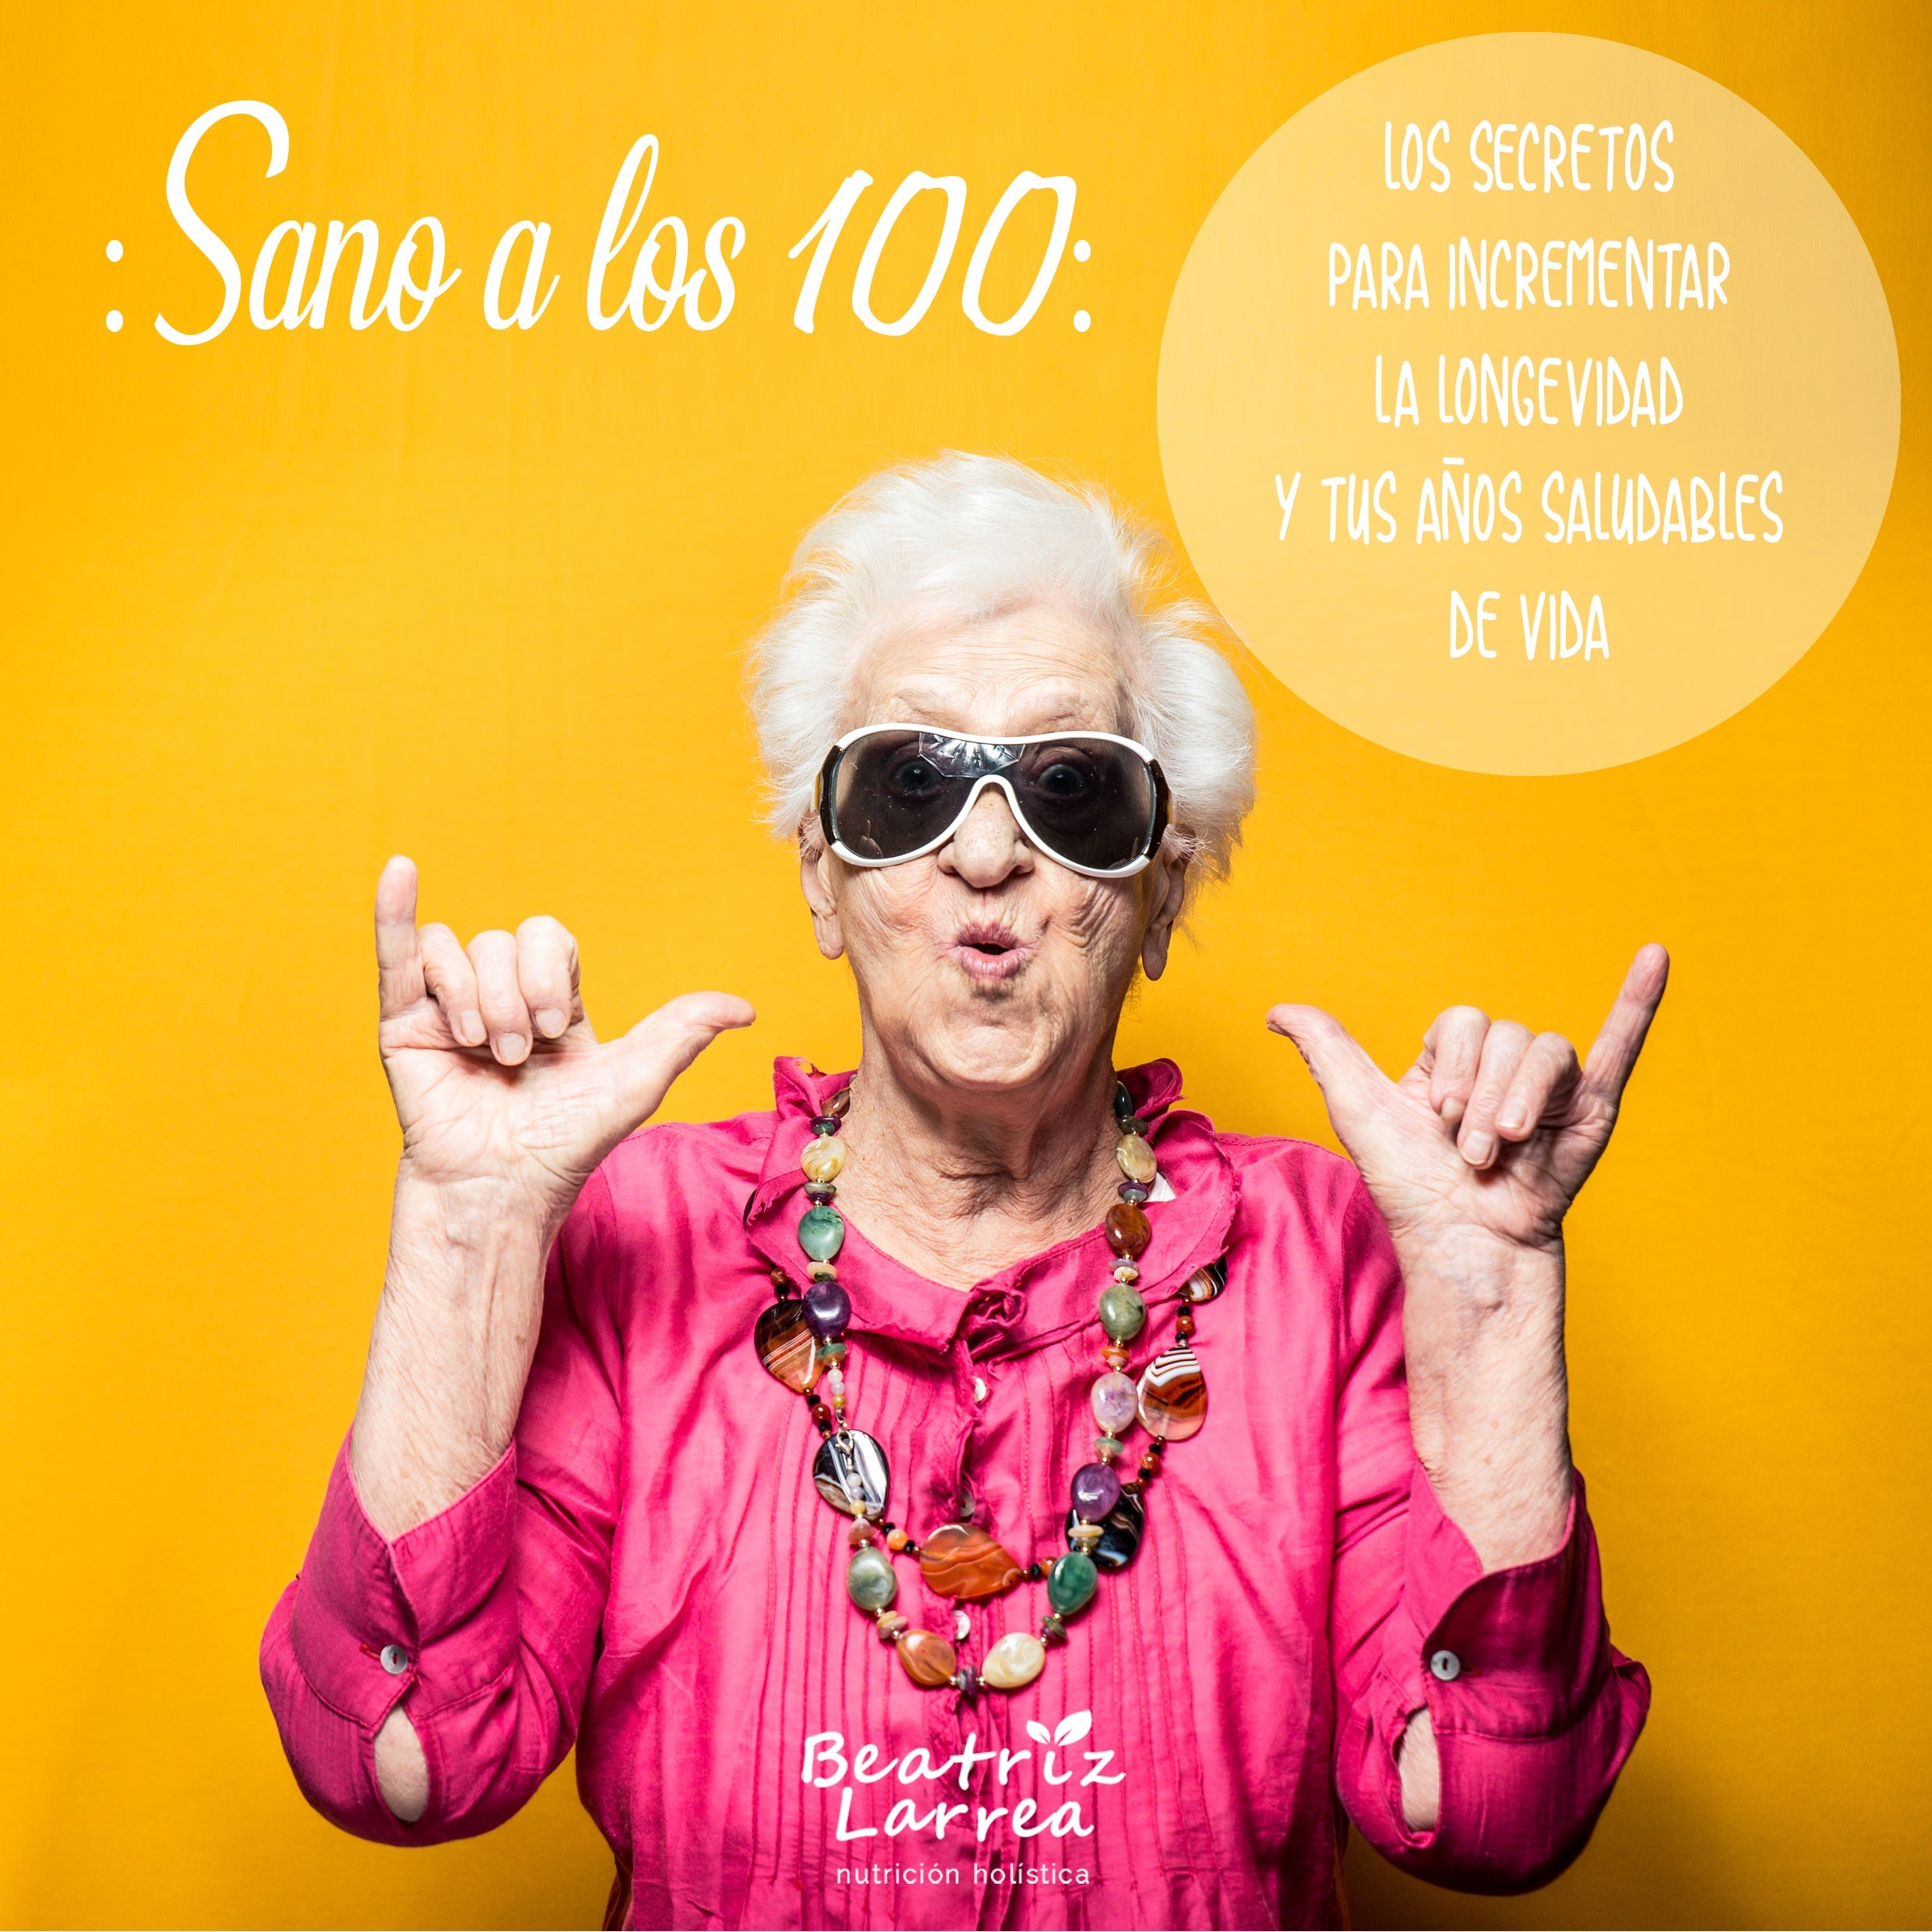 CURSO – Sano a los 100